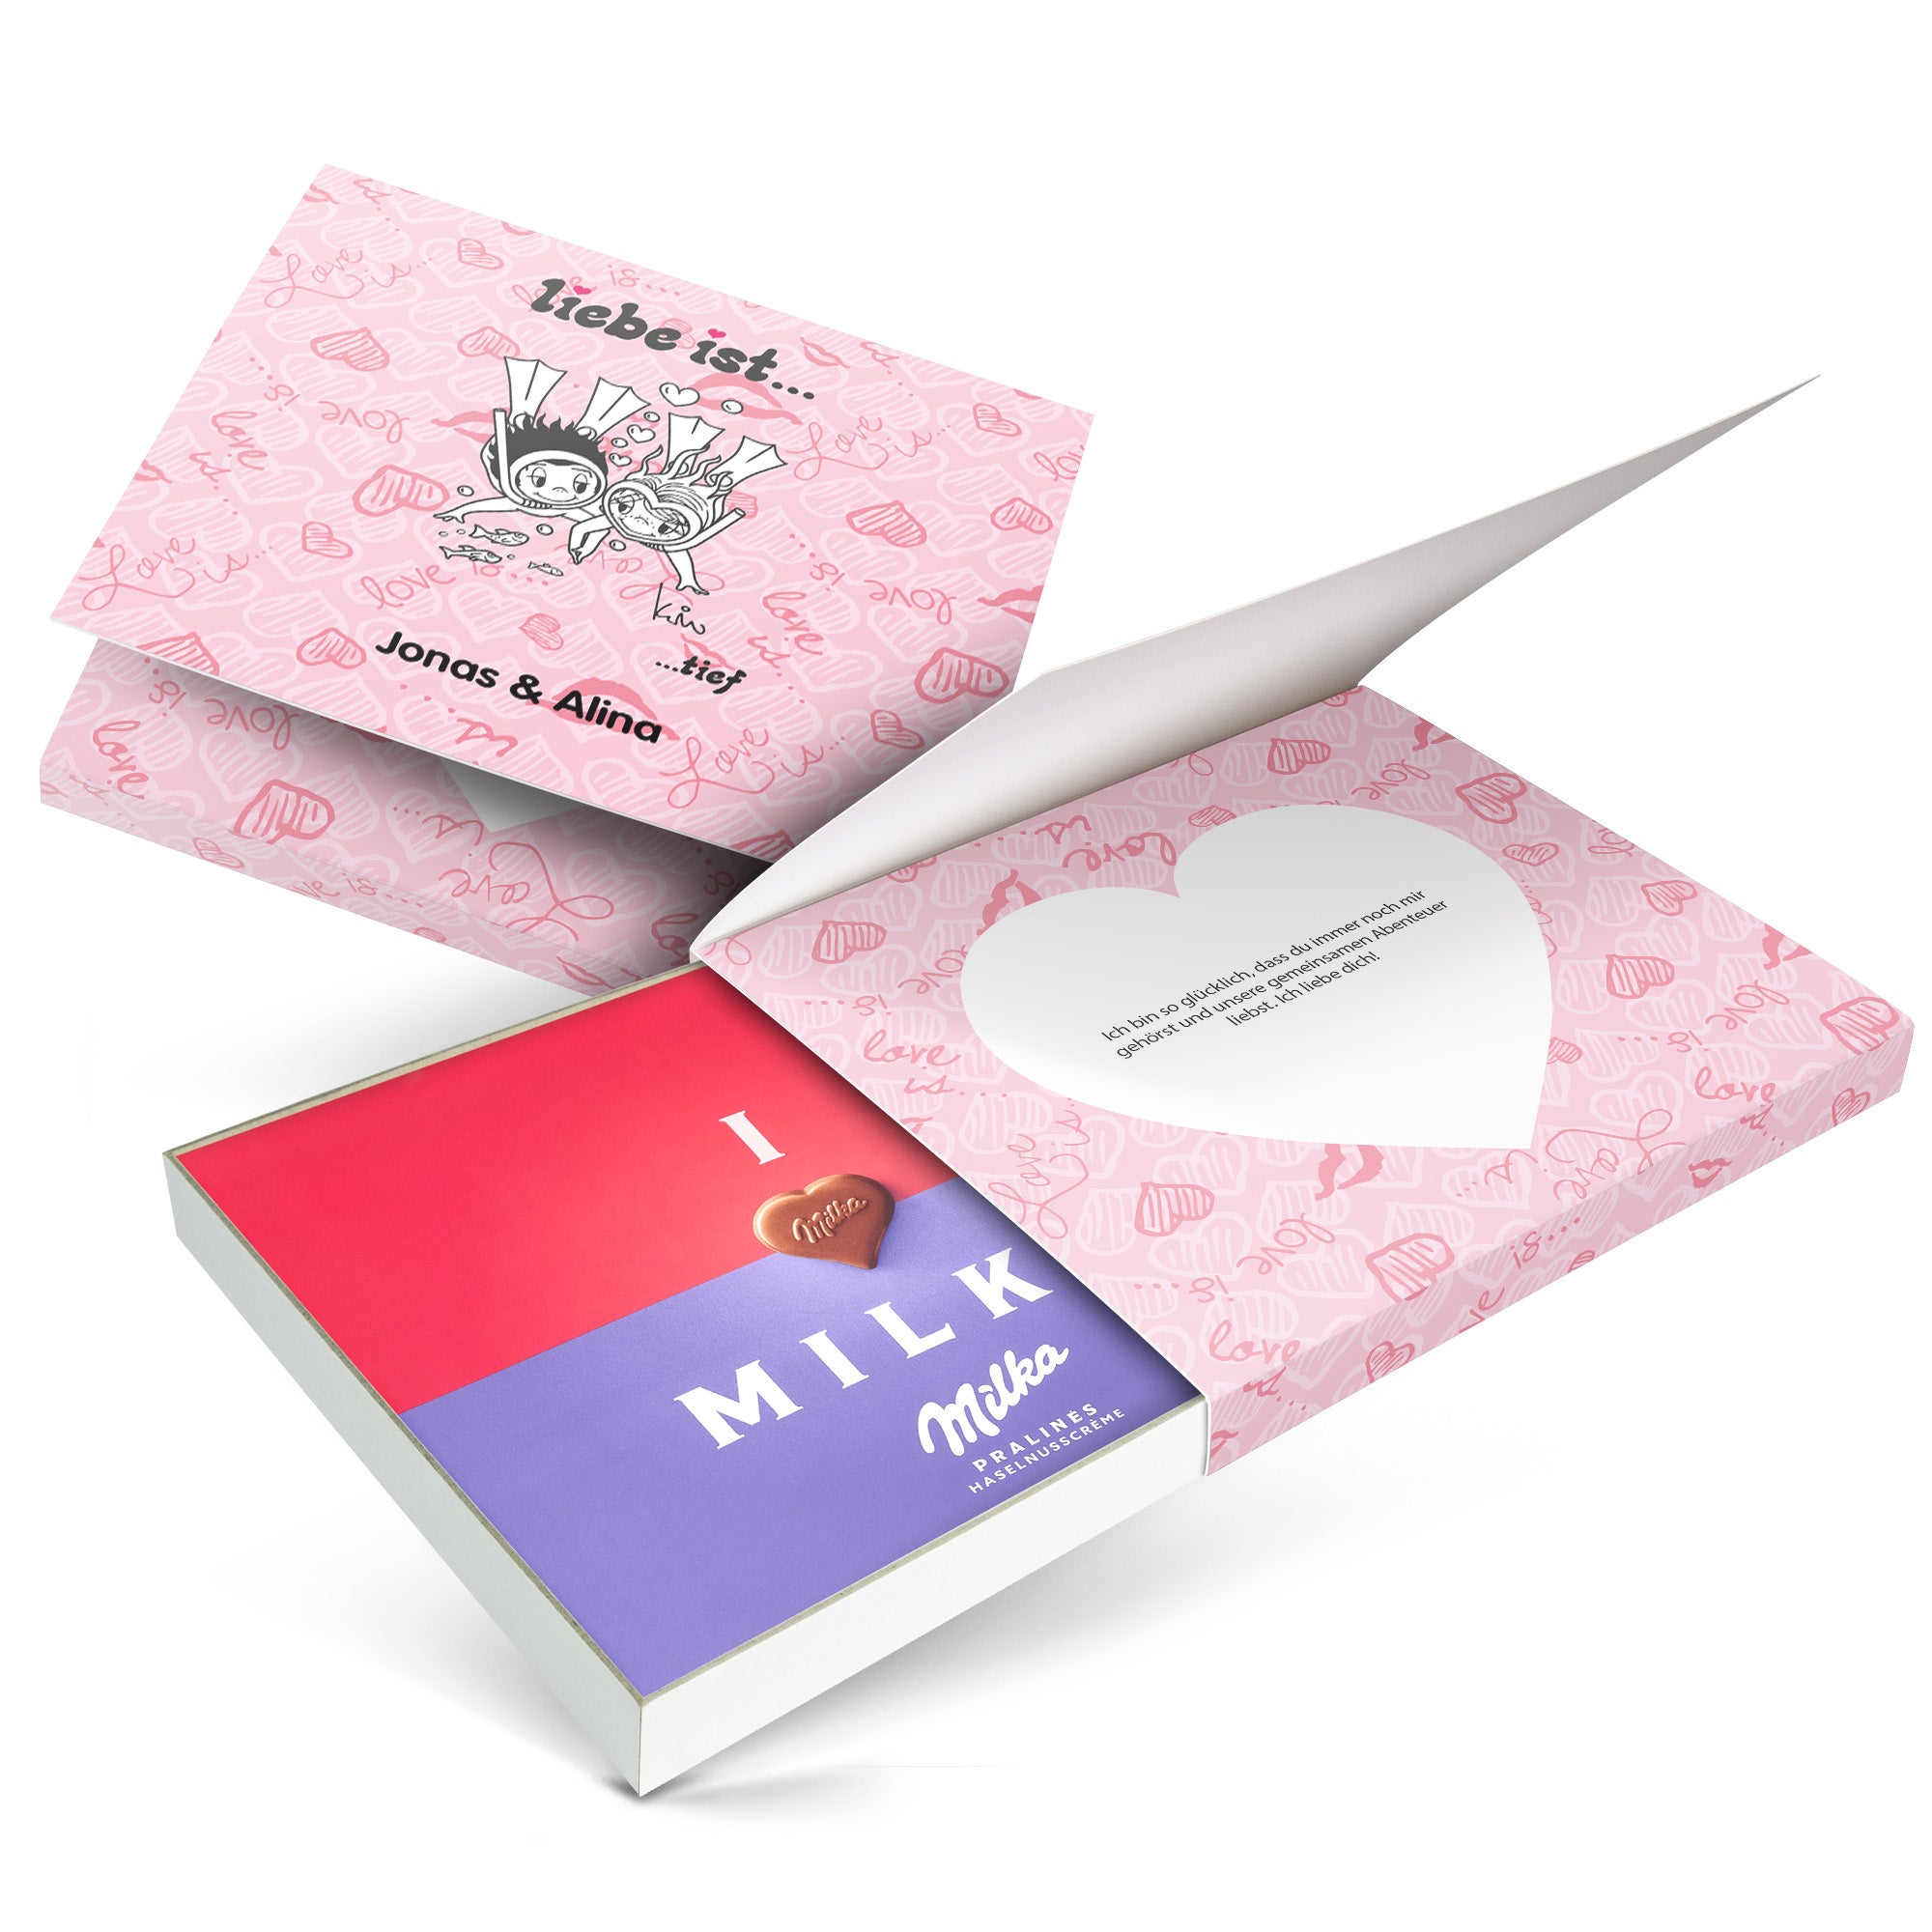 Individuellleckereien - Milka Pralinen personalisieren Liebe ist... 110 Gramm - Onlineshop YourSurprise